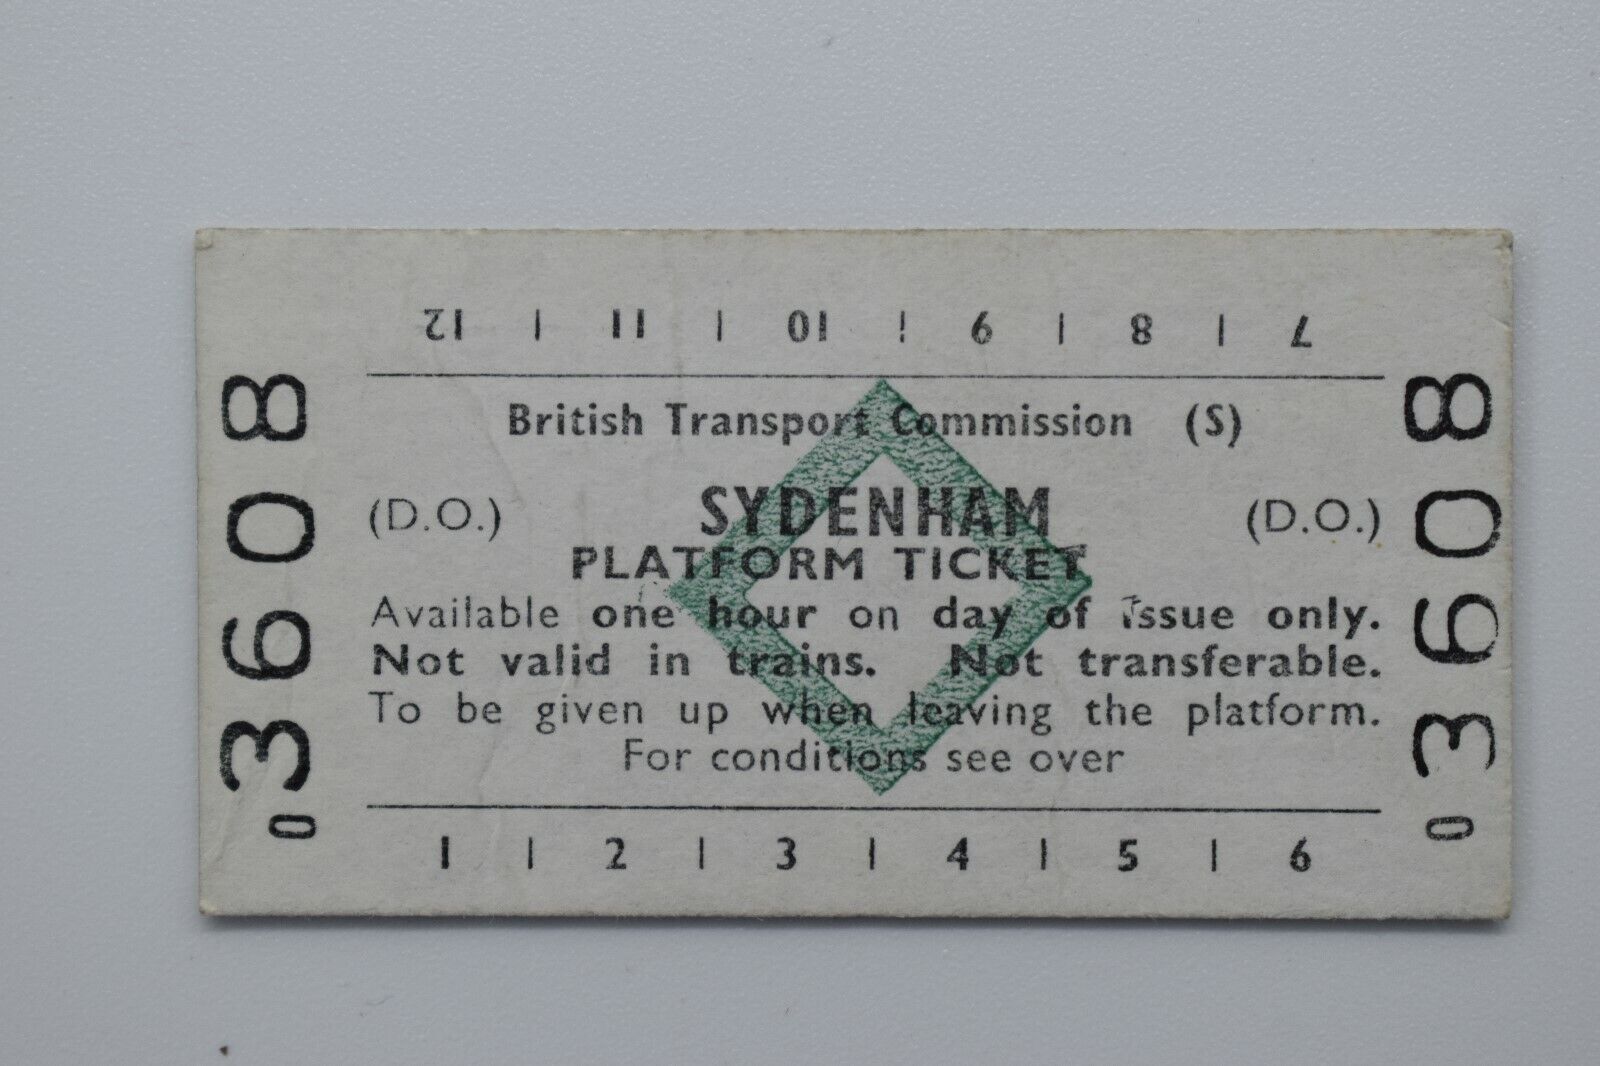 BTC (S) SYDENHAM Platform Ticket No 3608 - 28AUG81